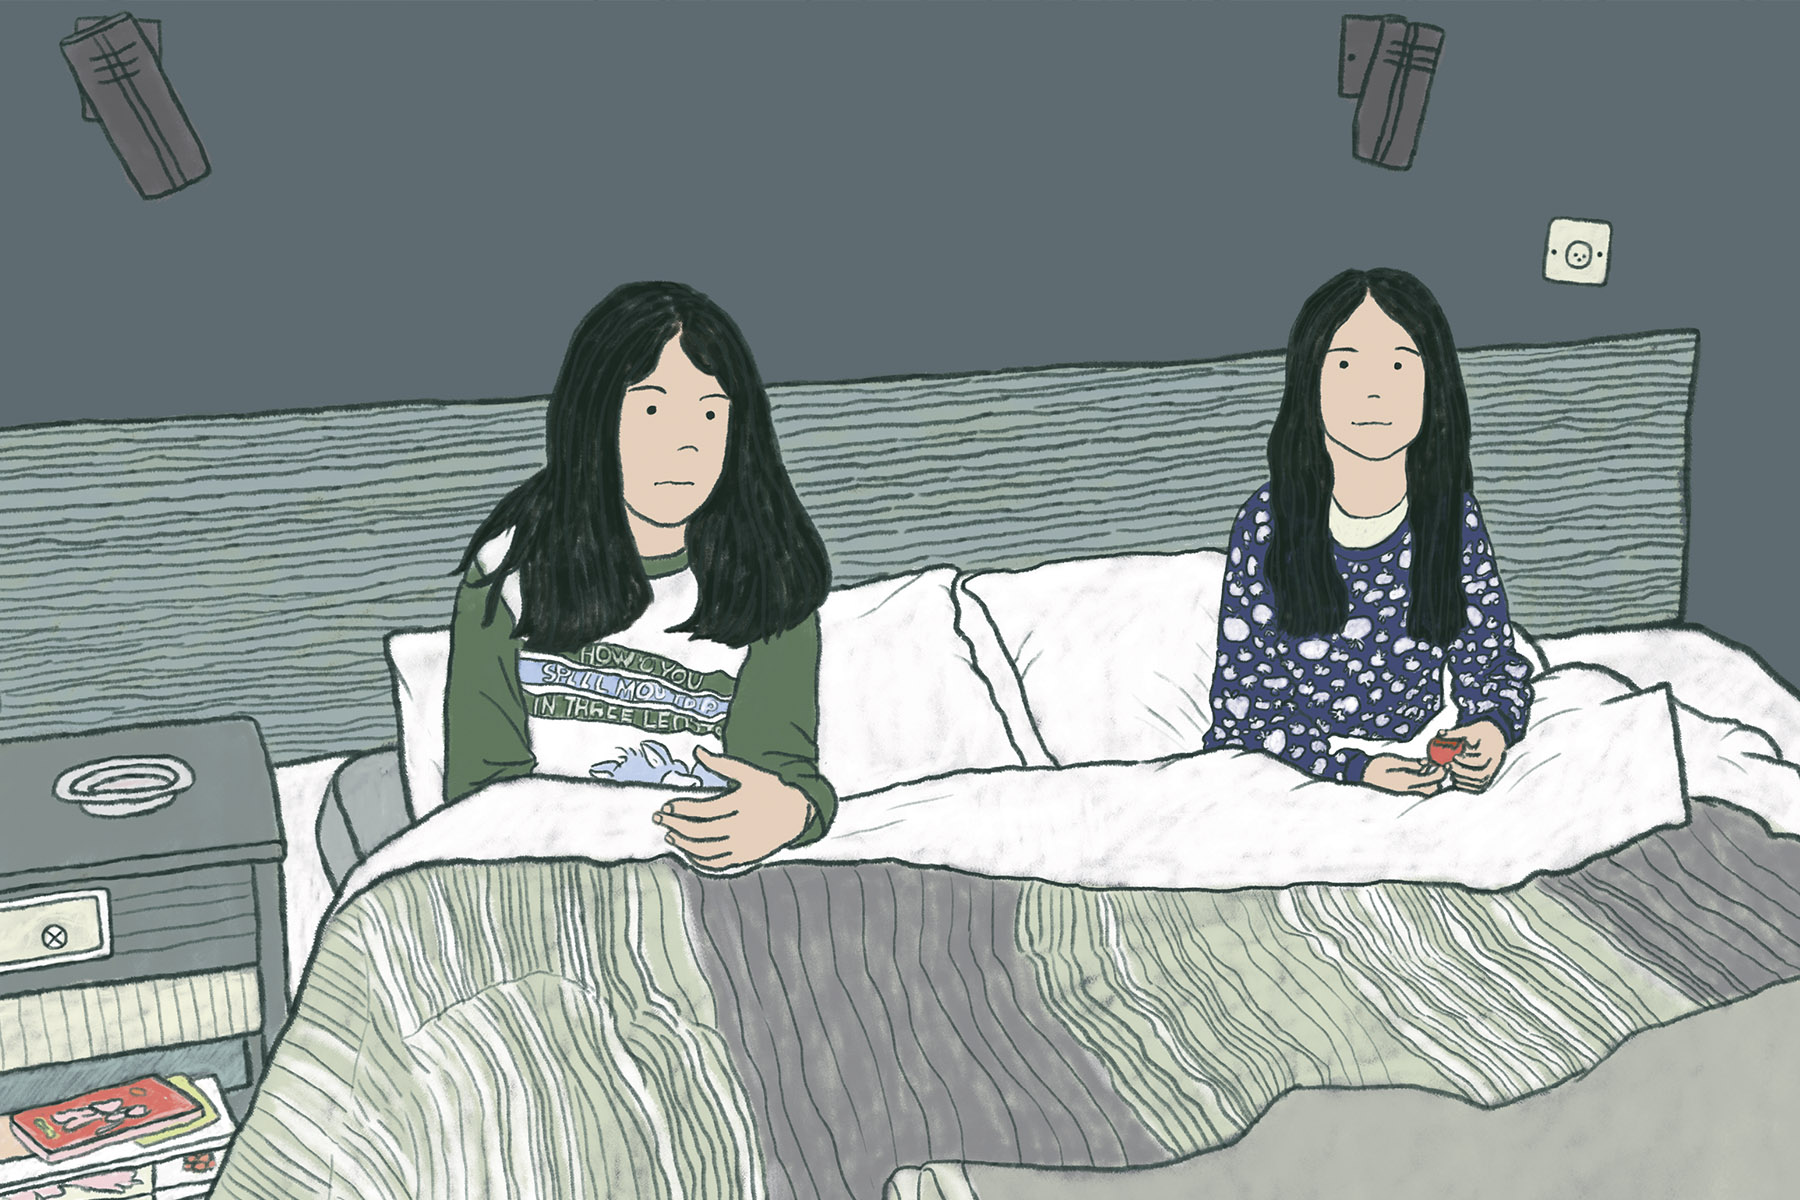  שתי ילדות תאומות בפיג'מה יושבות על מיטה גדולה, איור דיגיטלי